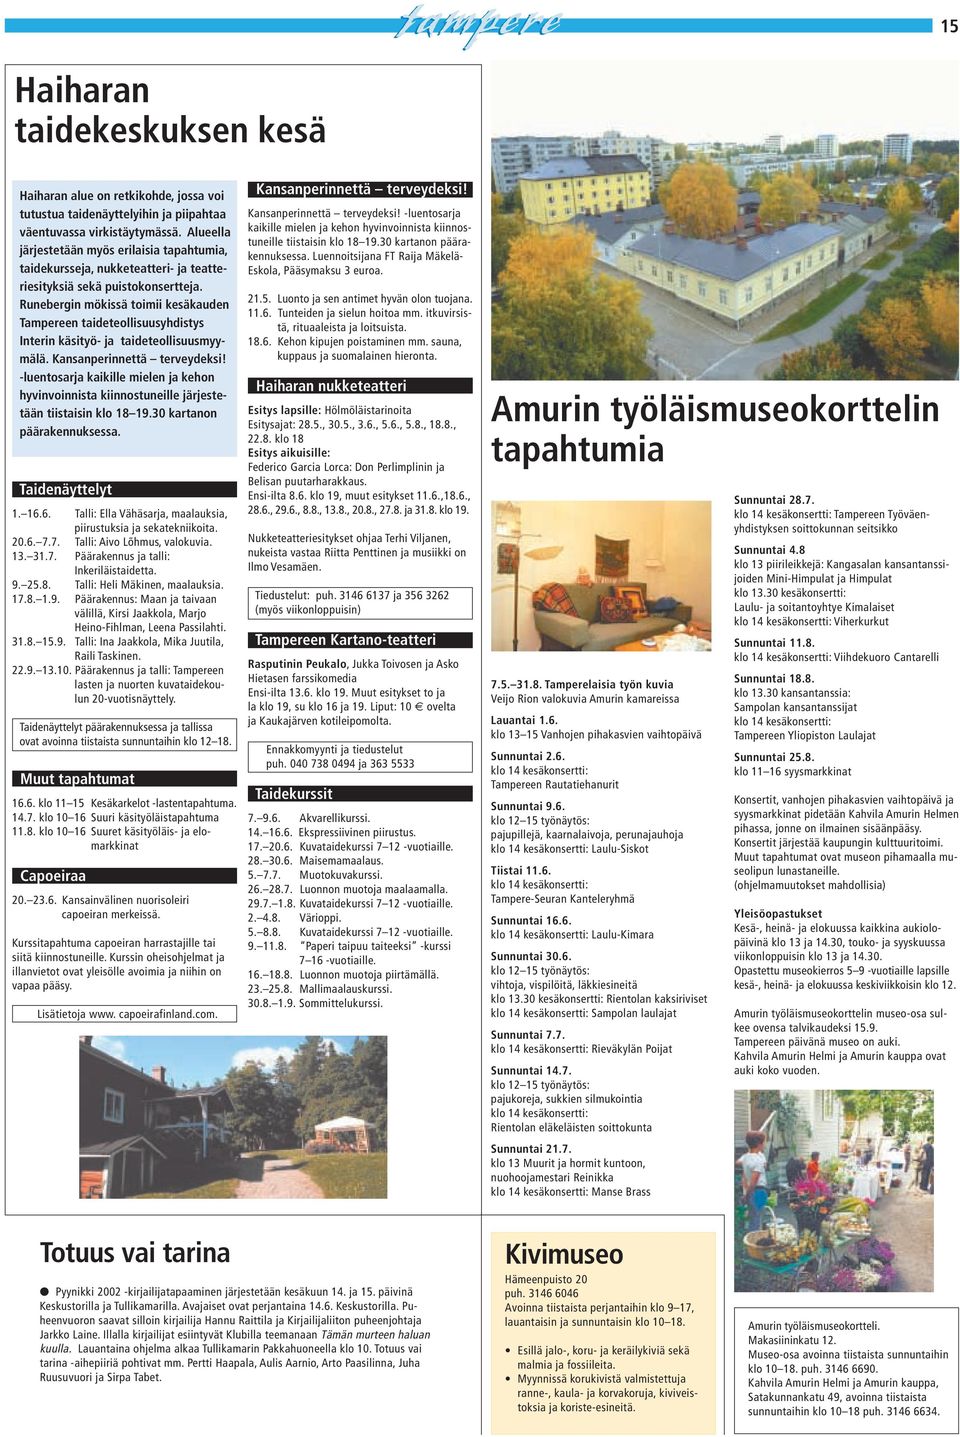 Runebergin mökissä toimii kesäkauden Tampereen taideteollisuusyhdistys Interin käsityö- ja taideteollisuusmyymälä. Kansanperinnettä terveydeksi!